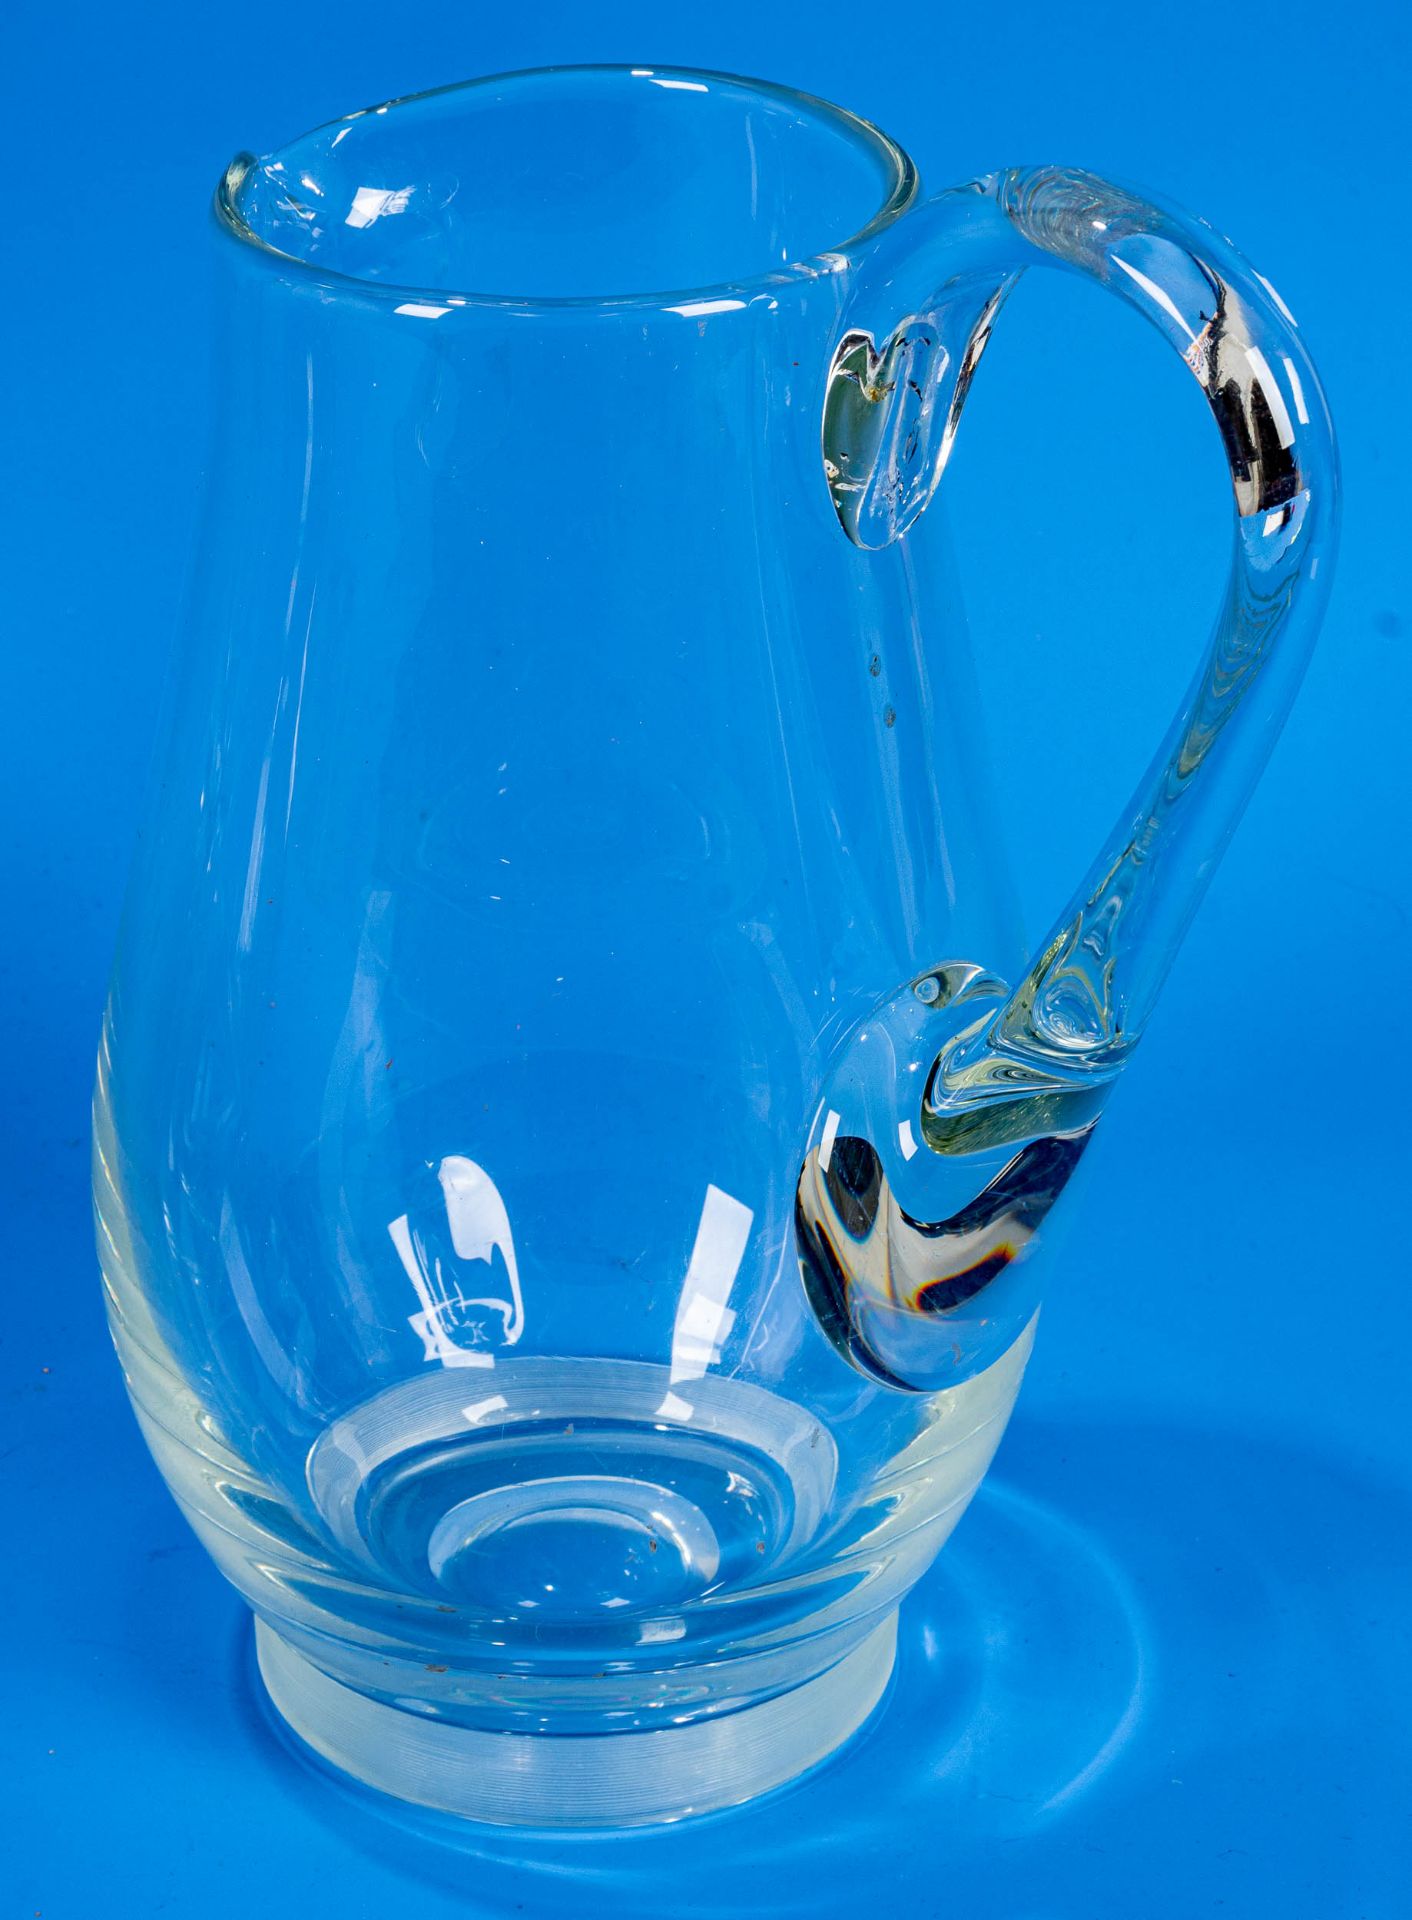 3teiliges Konvolut versch. Saftkrüge/Wasserkrüge. Farblose Glaskörper mit seitlichem Griff, teilwei - Image 8 of 9